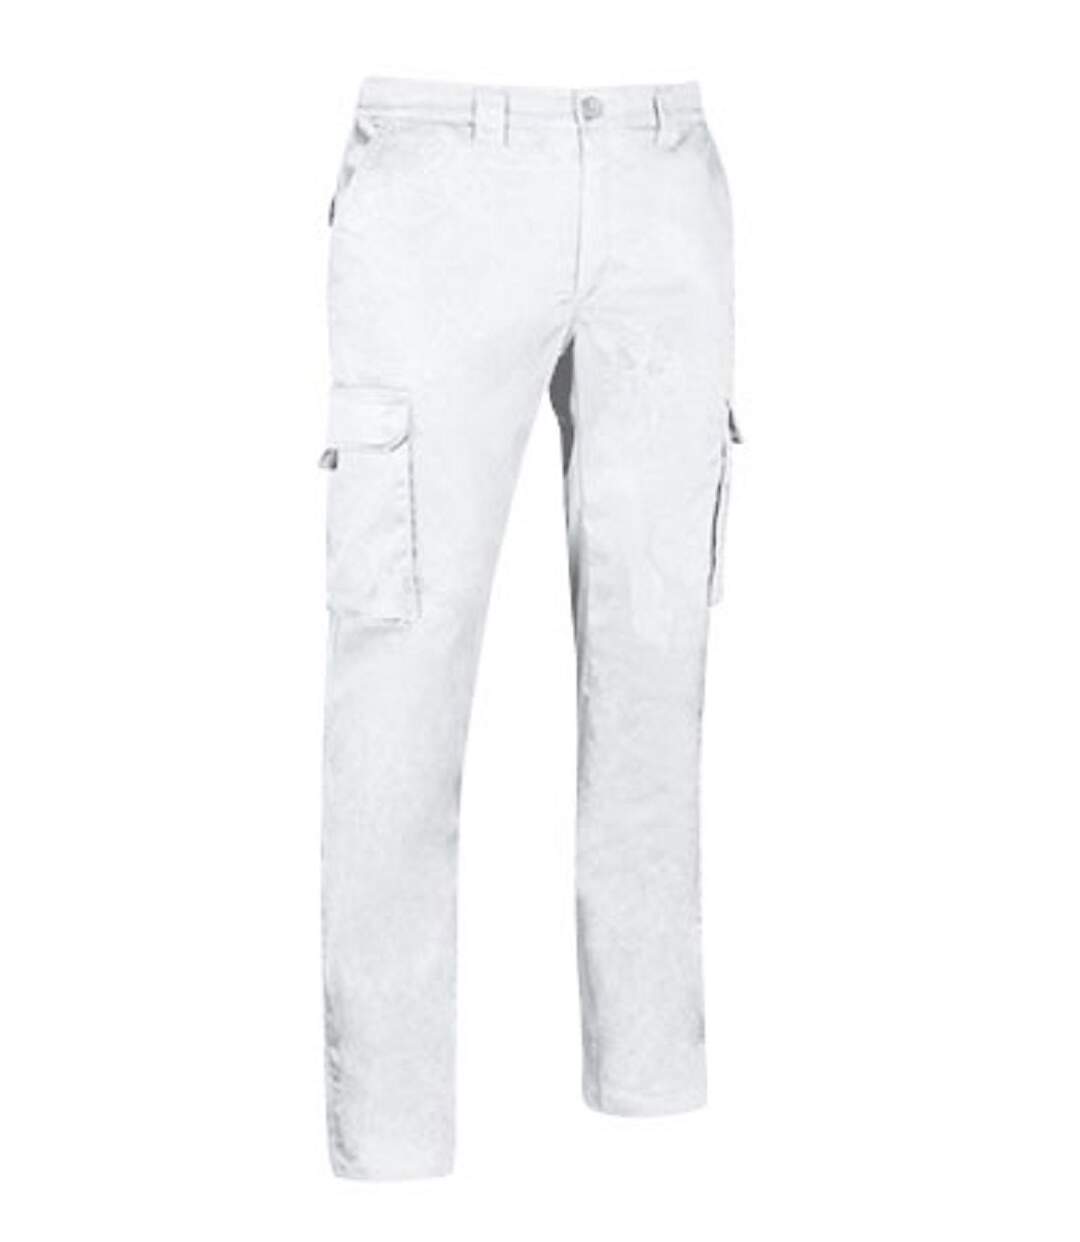 Pantalon de travail - Homme - CHESTNUT - blanc